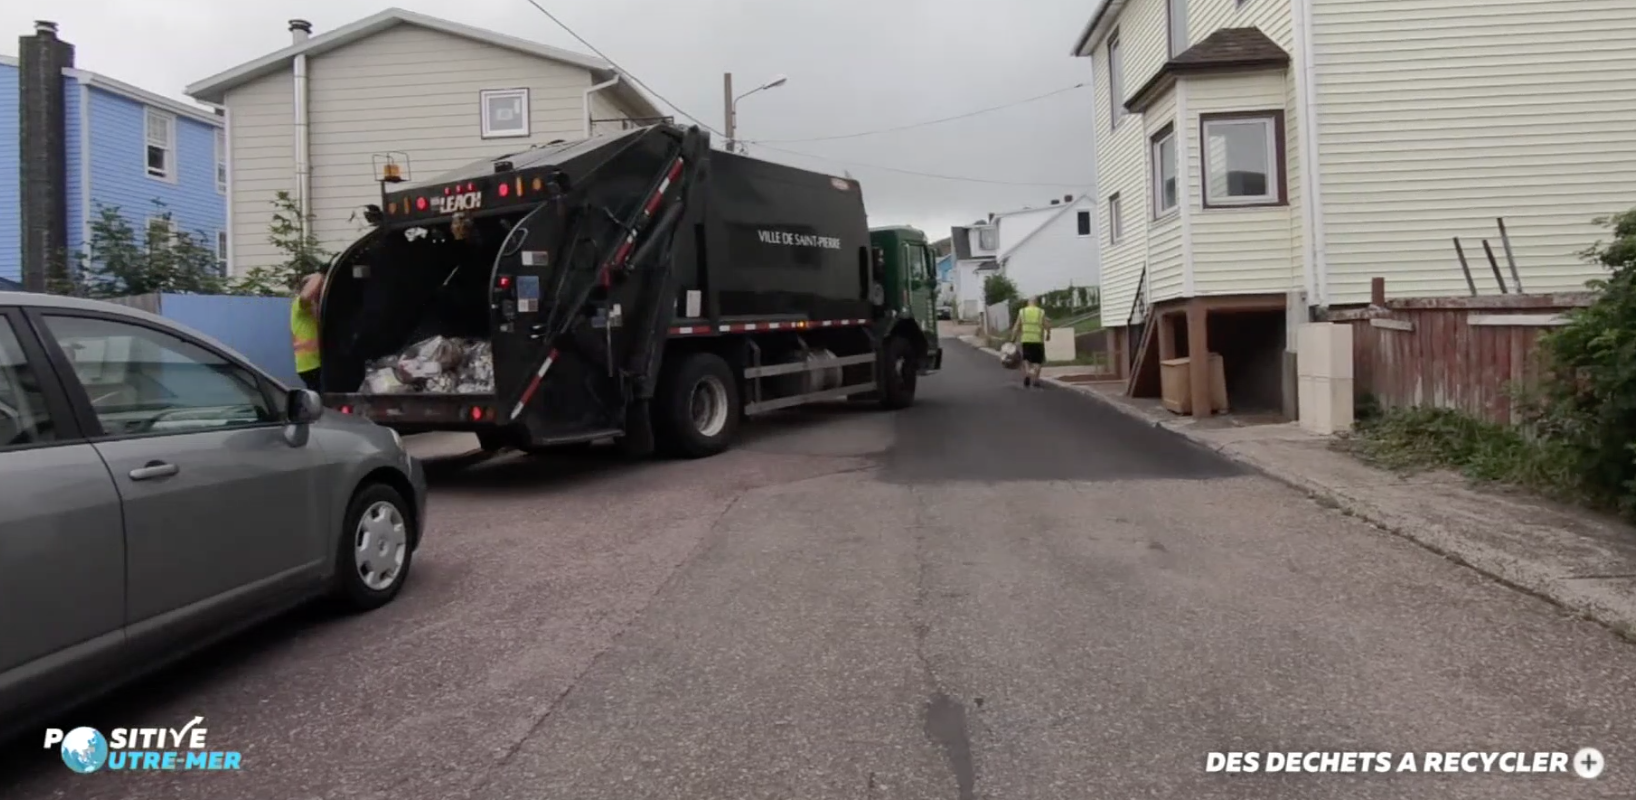 VIDÉO. Positive Outre-mer : A Saint-Pierre et Miquelon, des déchets à recycler